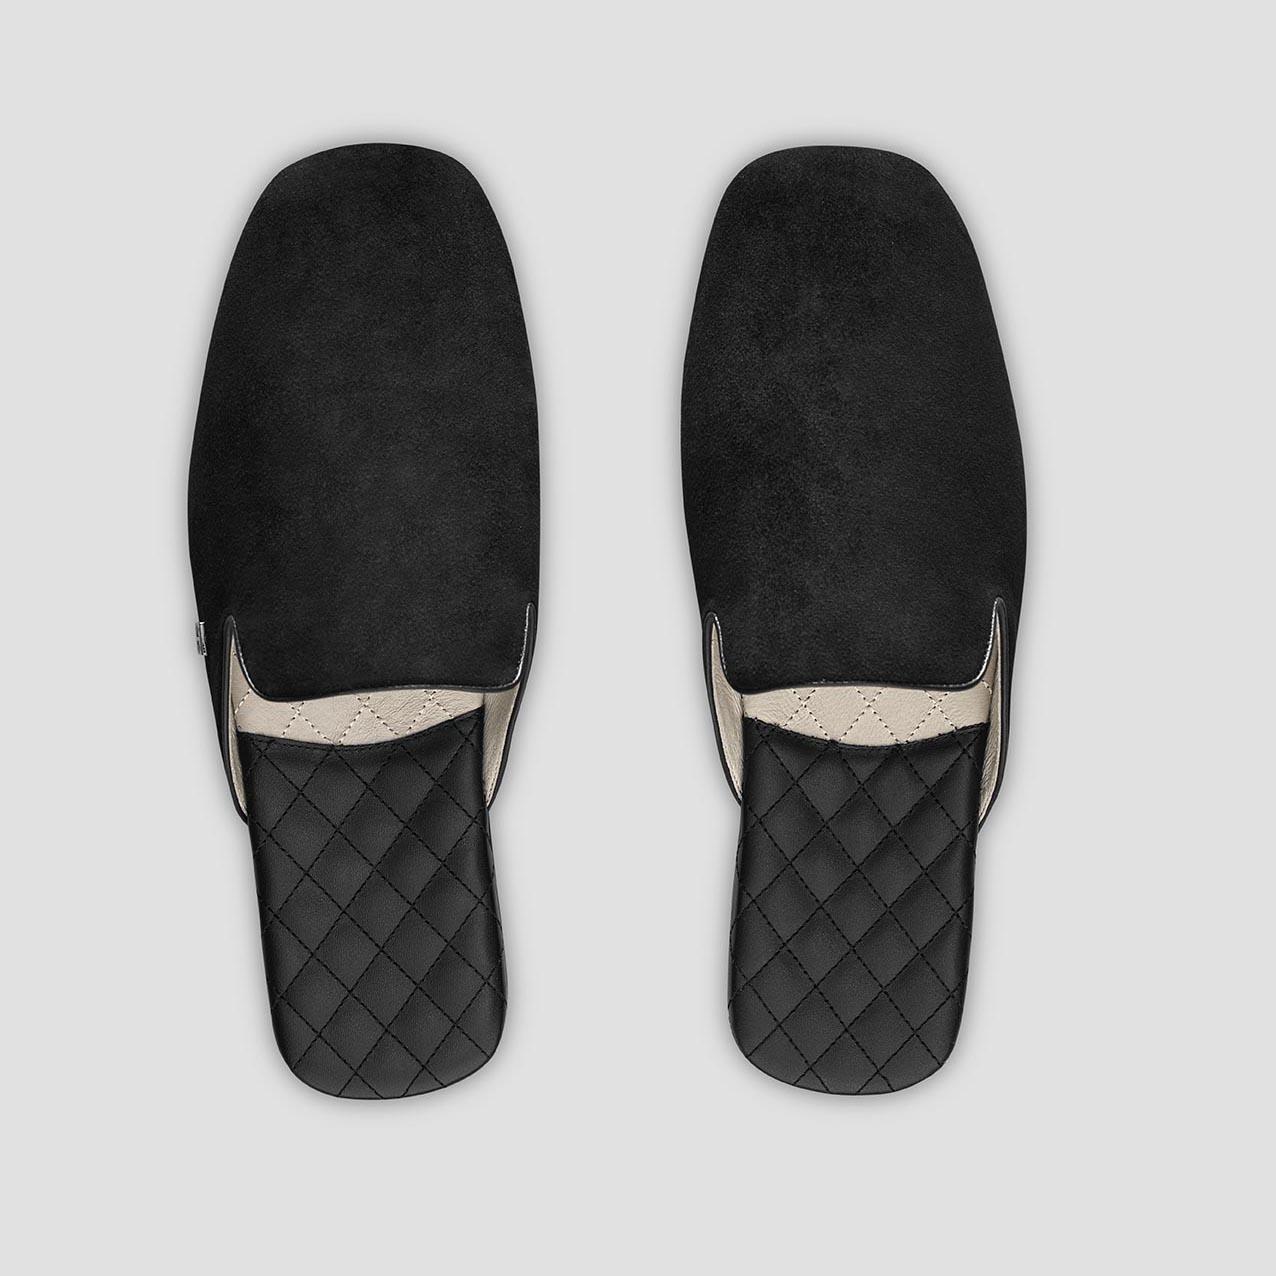 Тапочки Togas Реон черные мужские кожаные, размер 46-47 тапочки togas оливер мужские черные р 46 47